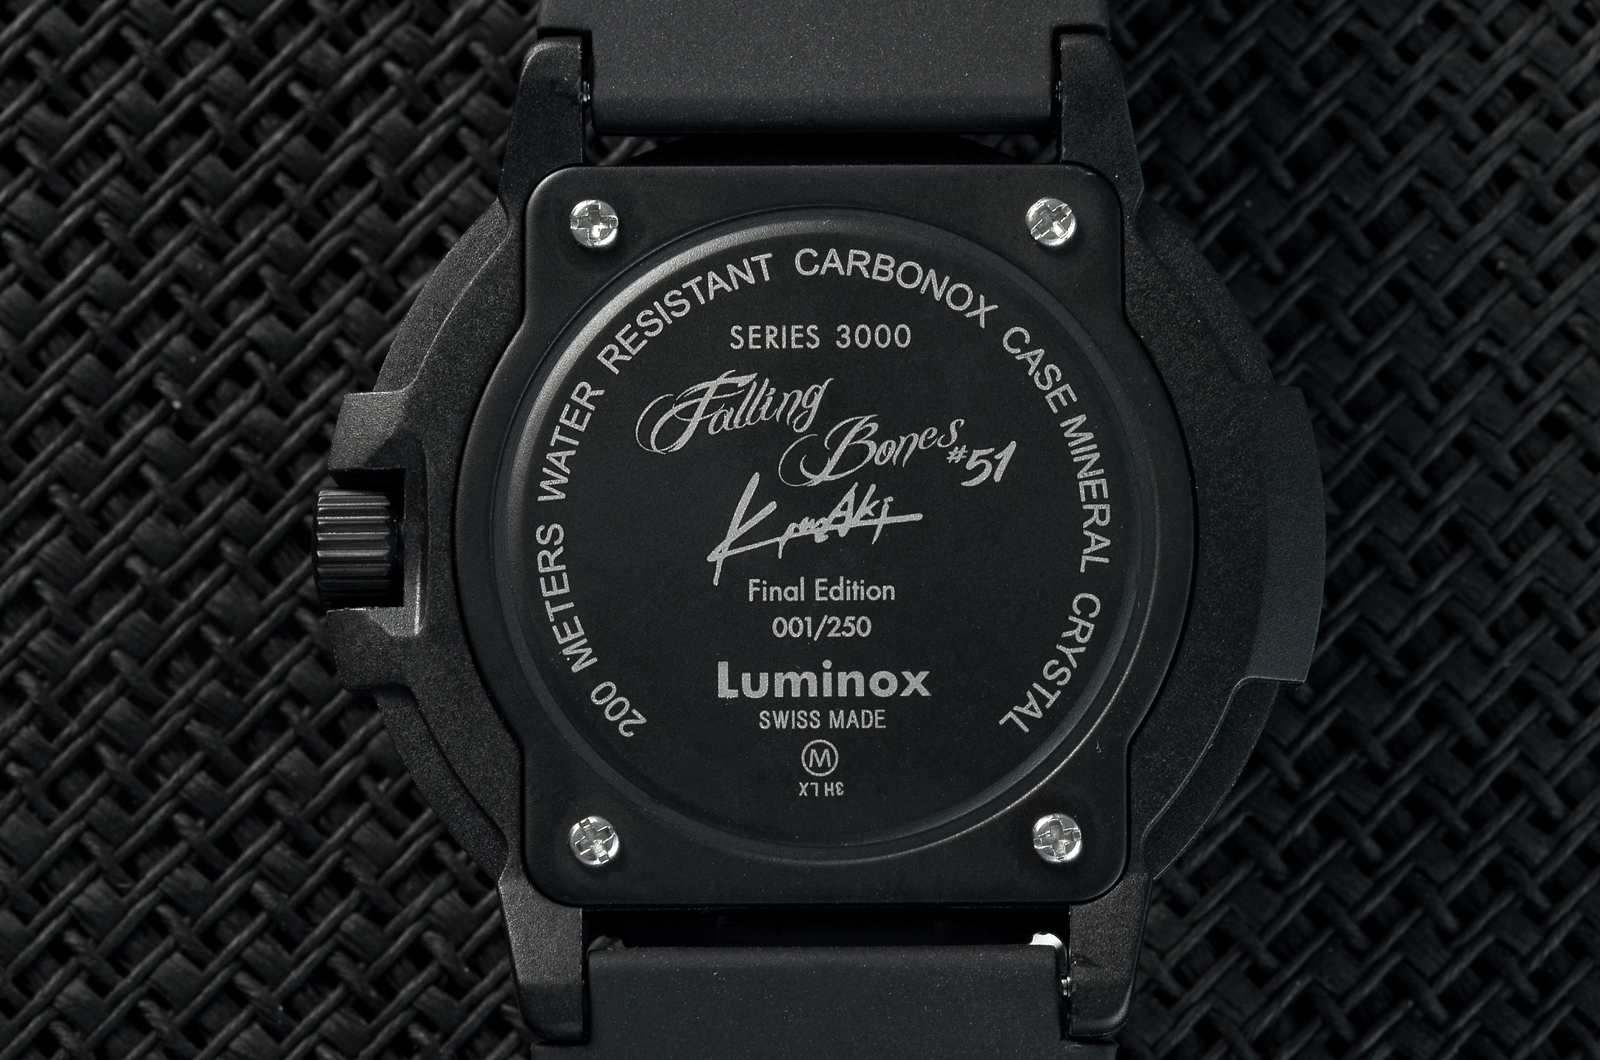 上品】 Luminox 3000 FALLINGBONES FE SET 岩城滉一モデル 腕時計 